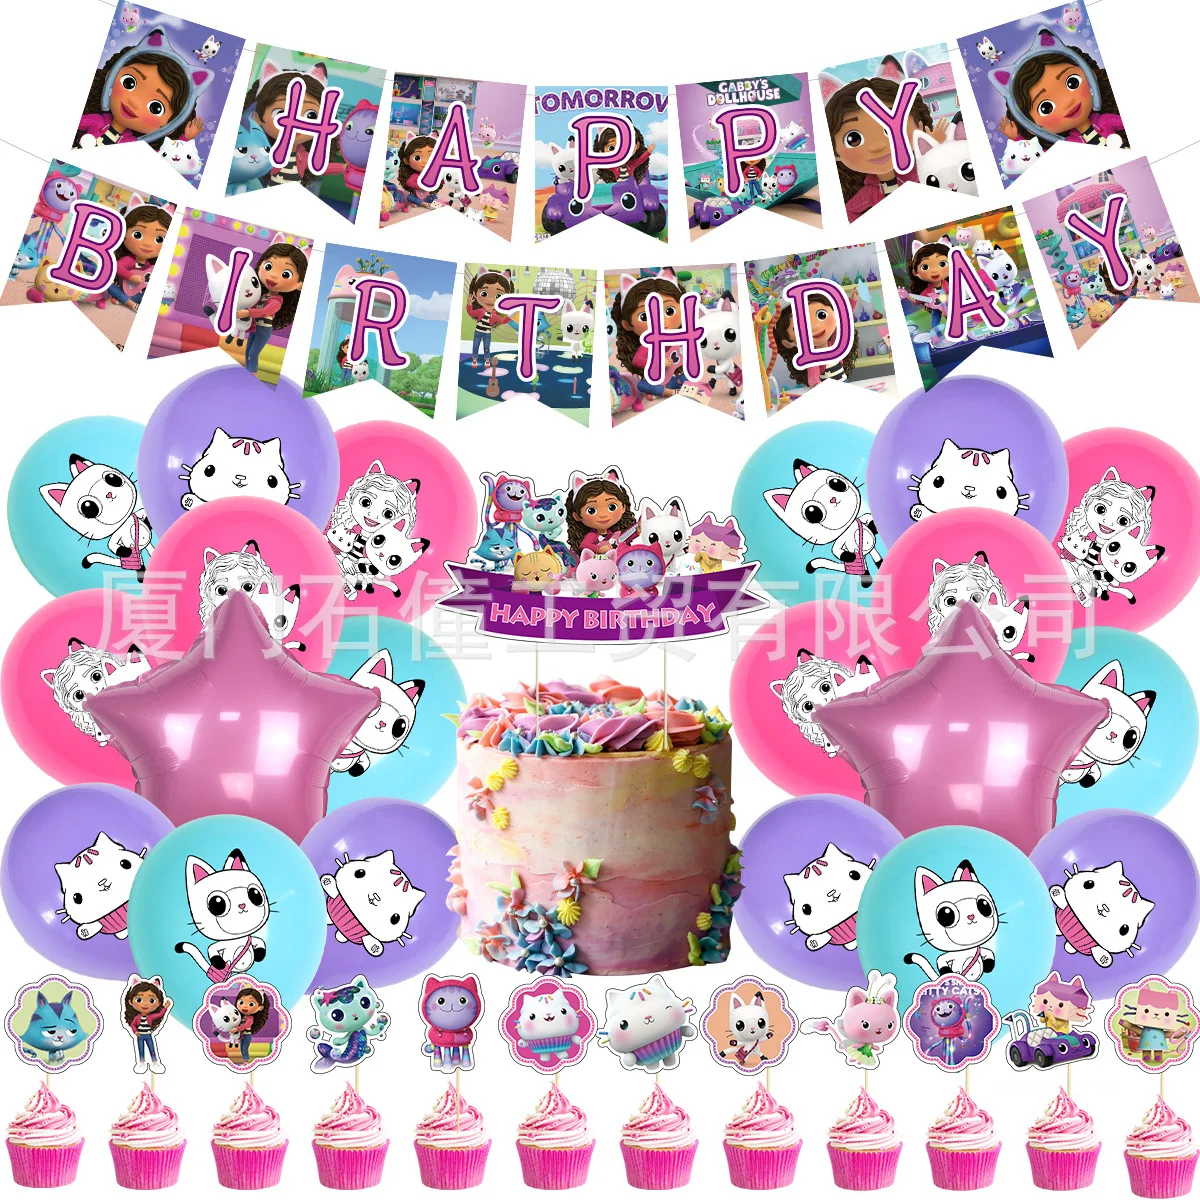 Gabby casa de muñecas gatos decoración de cumpleaños globo vajilla